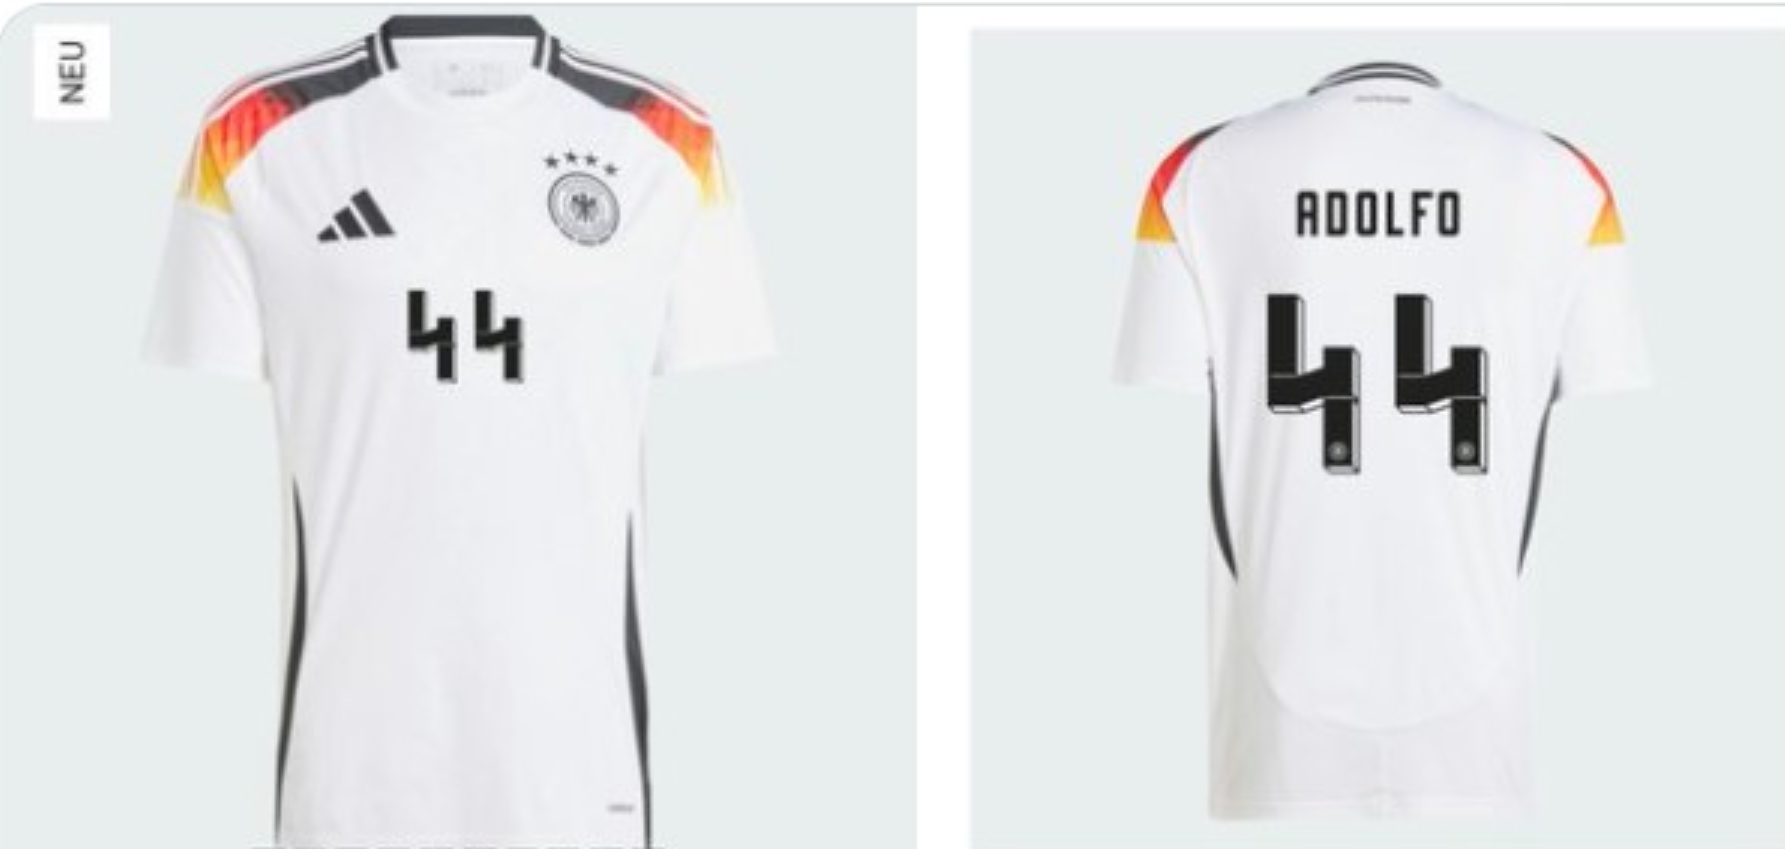 La camiseta de la seleccion alemana es ligeramente nazi